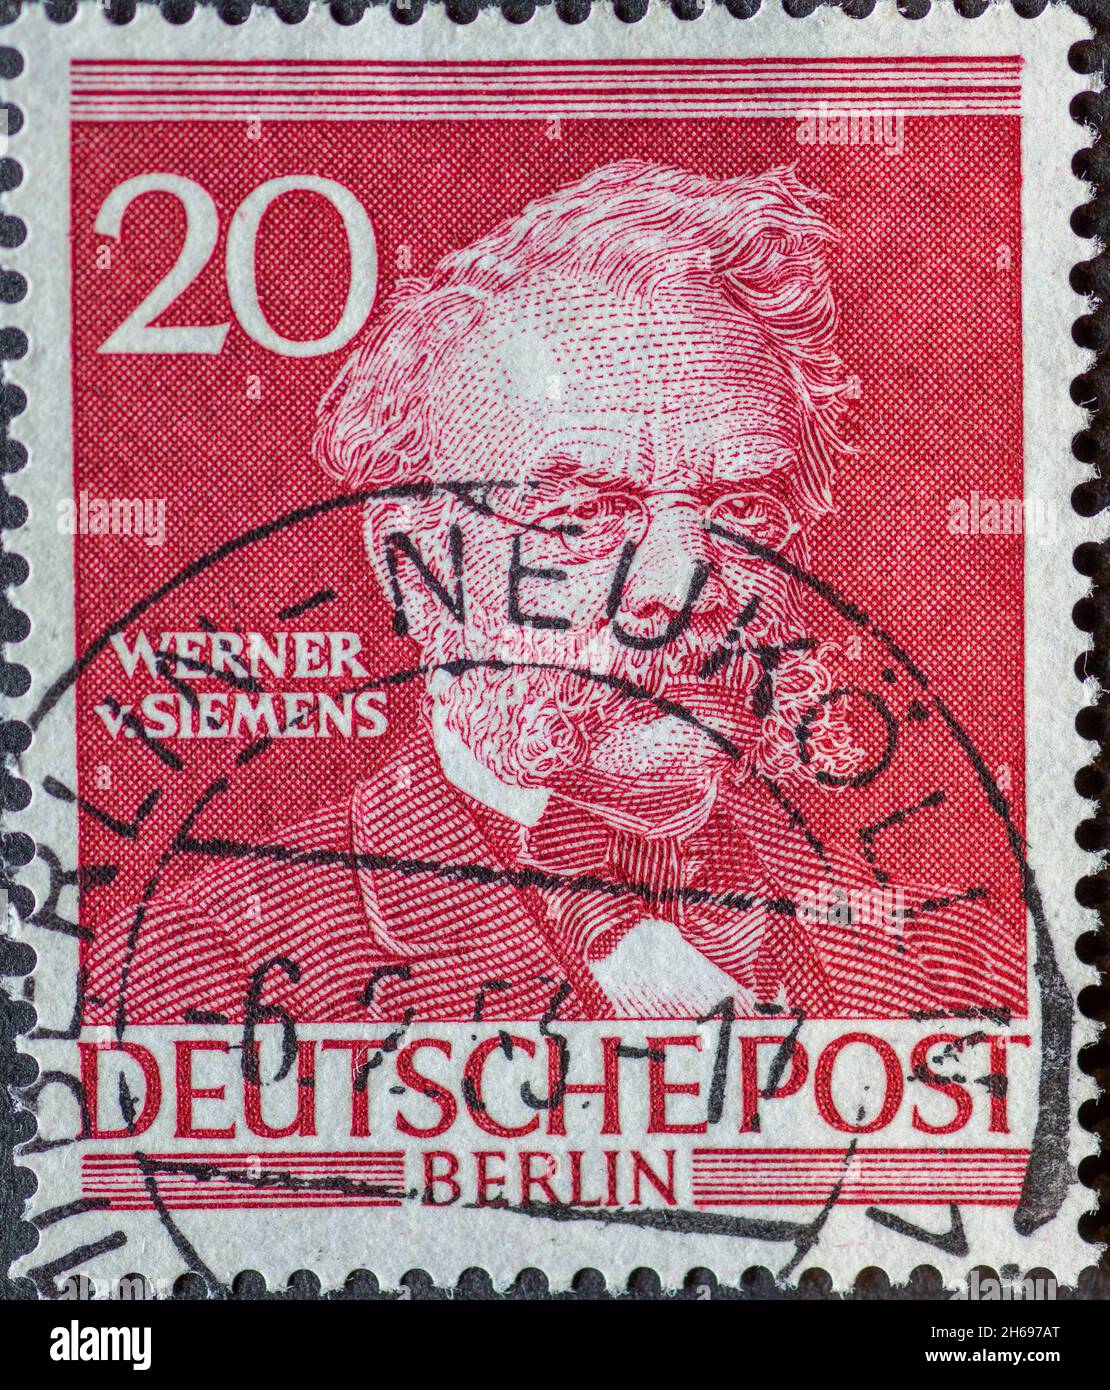 DEUTSCHLAND, Berlin - UM 1952 : eine Briefmarke aus Deutschland, Berlin zeigt Männer aus der Geschichte Berlins: Werner von Siemens Stockfoto